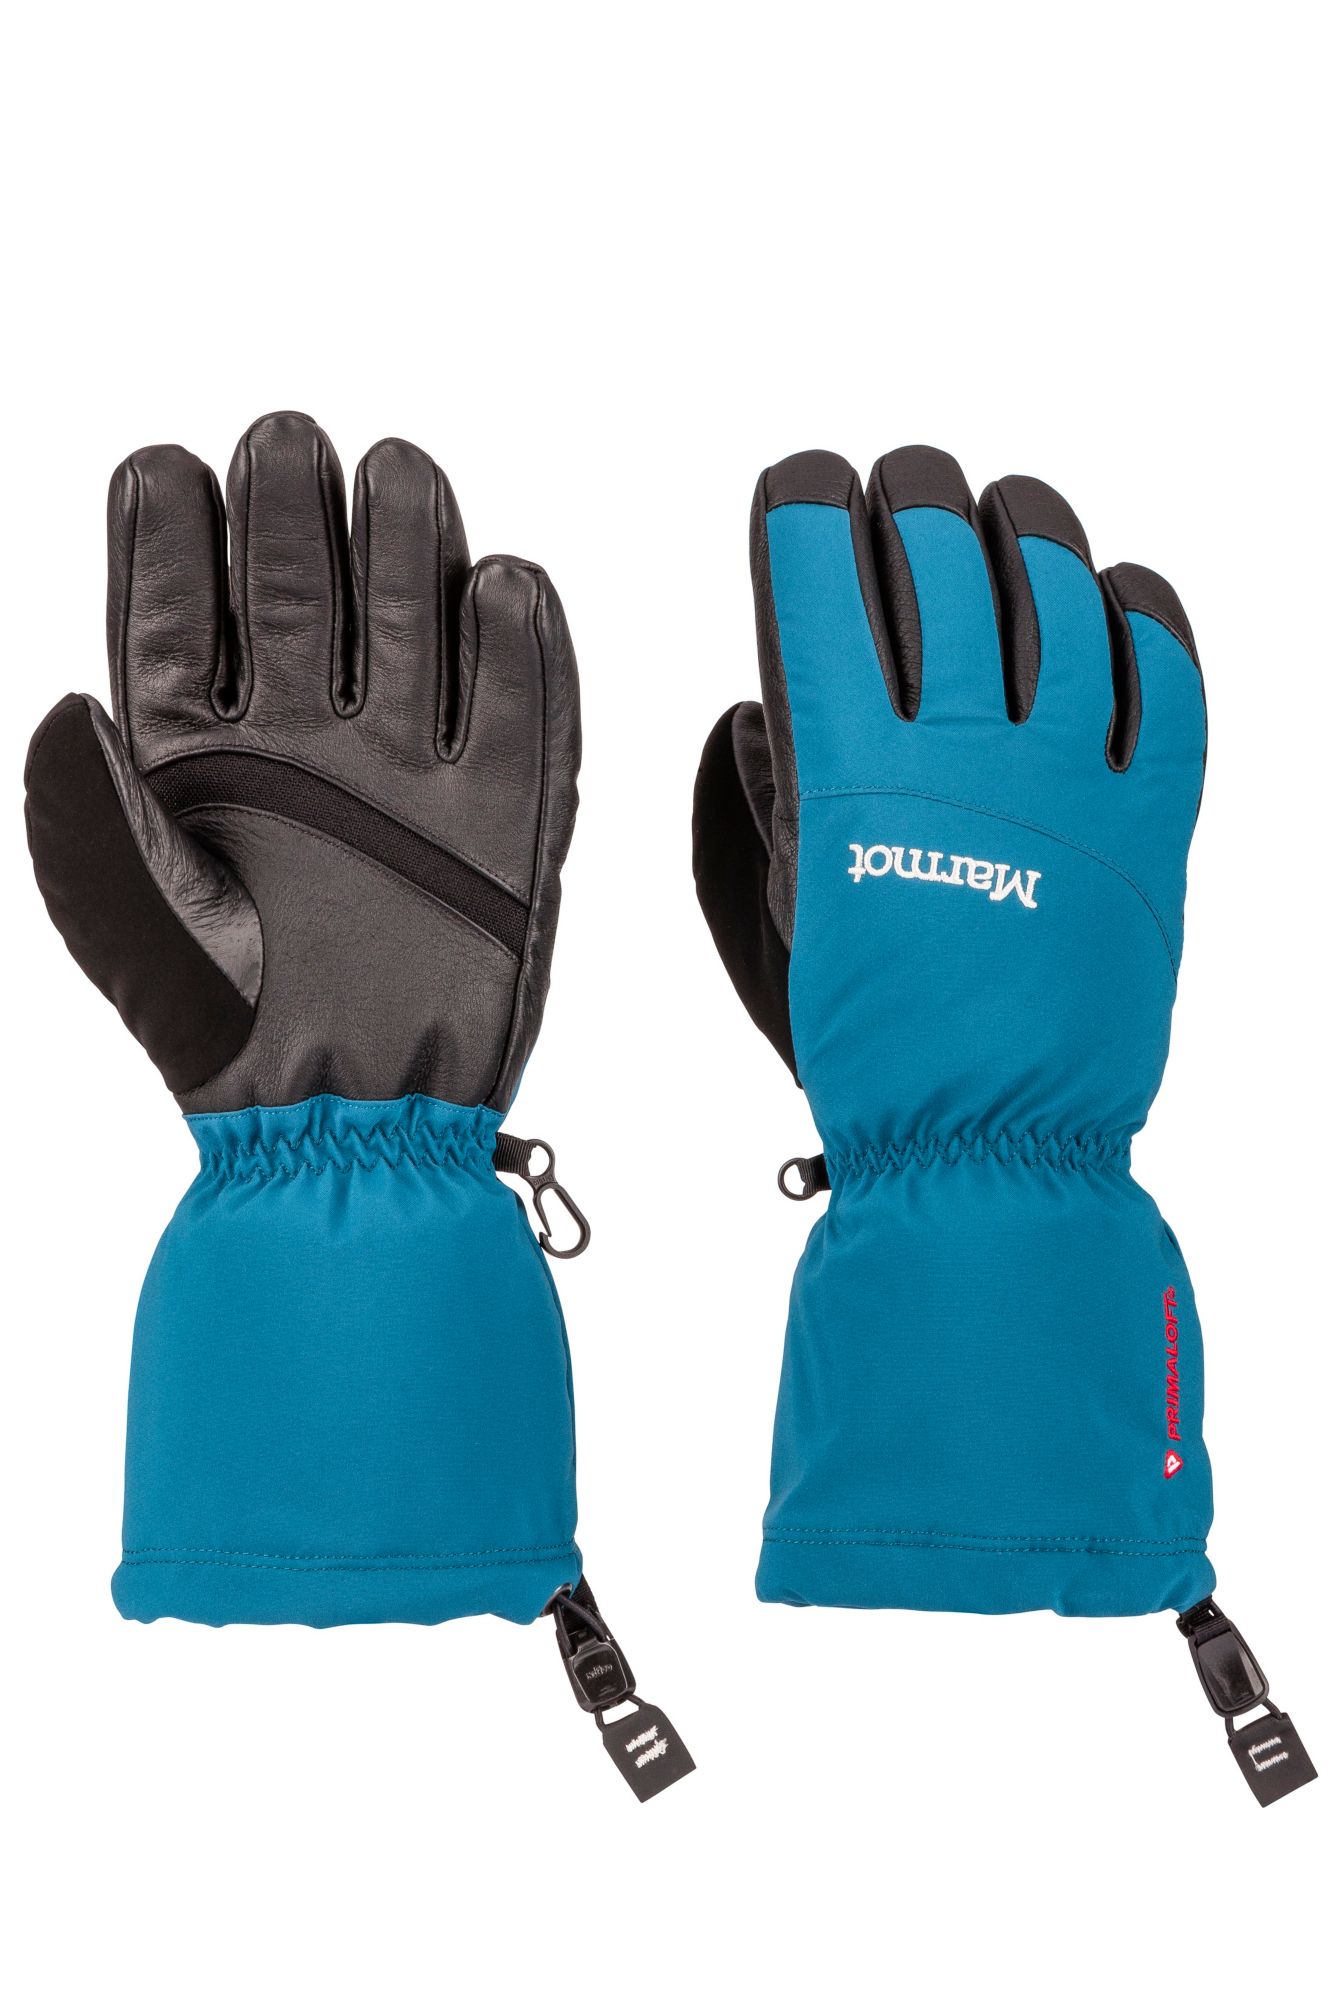 Women's Warmest Gloves